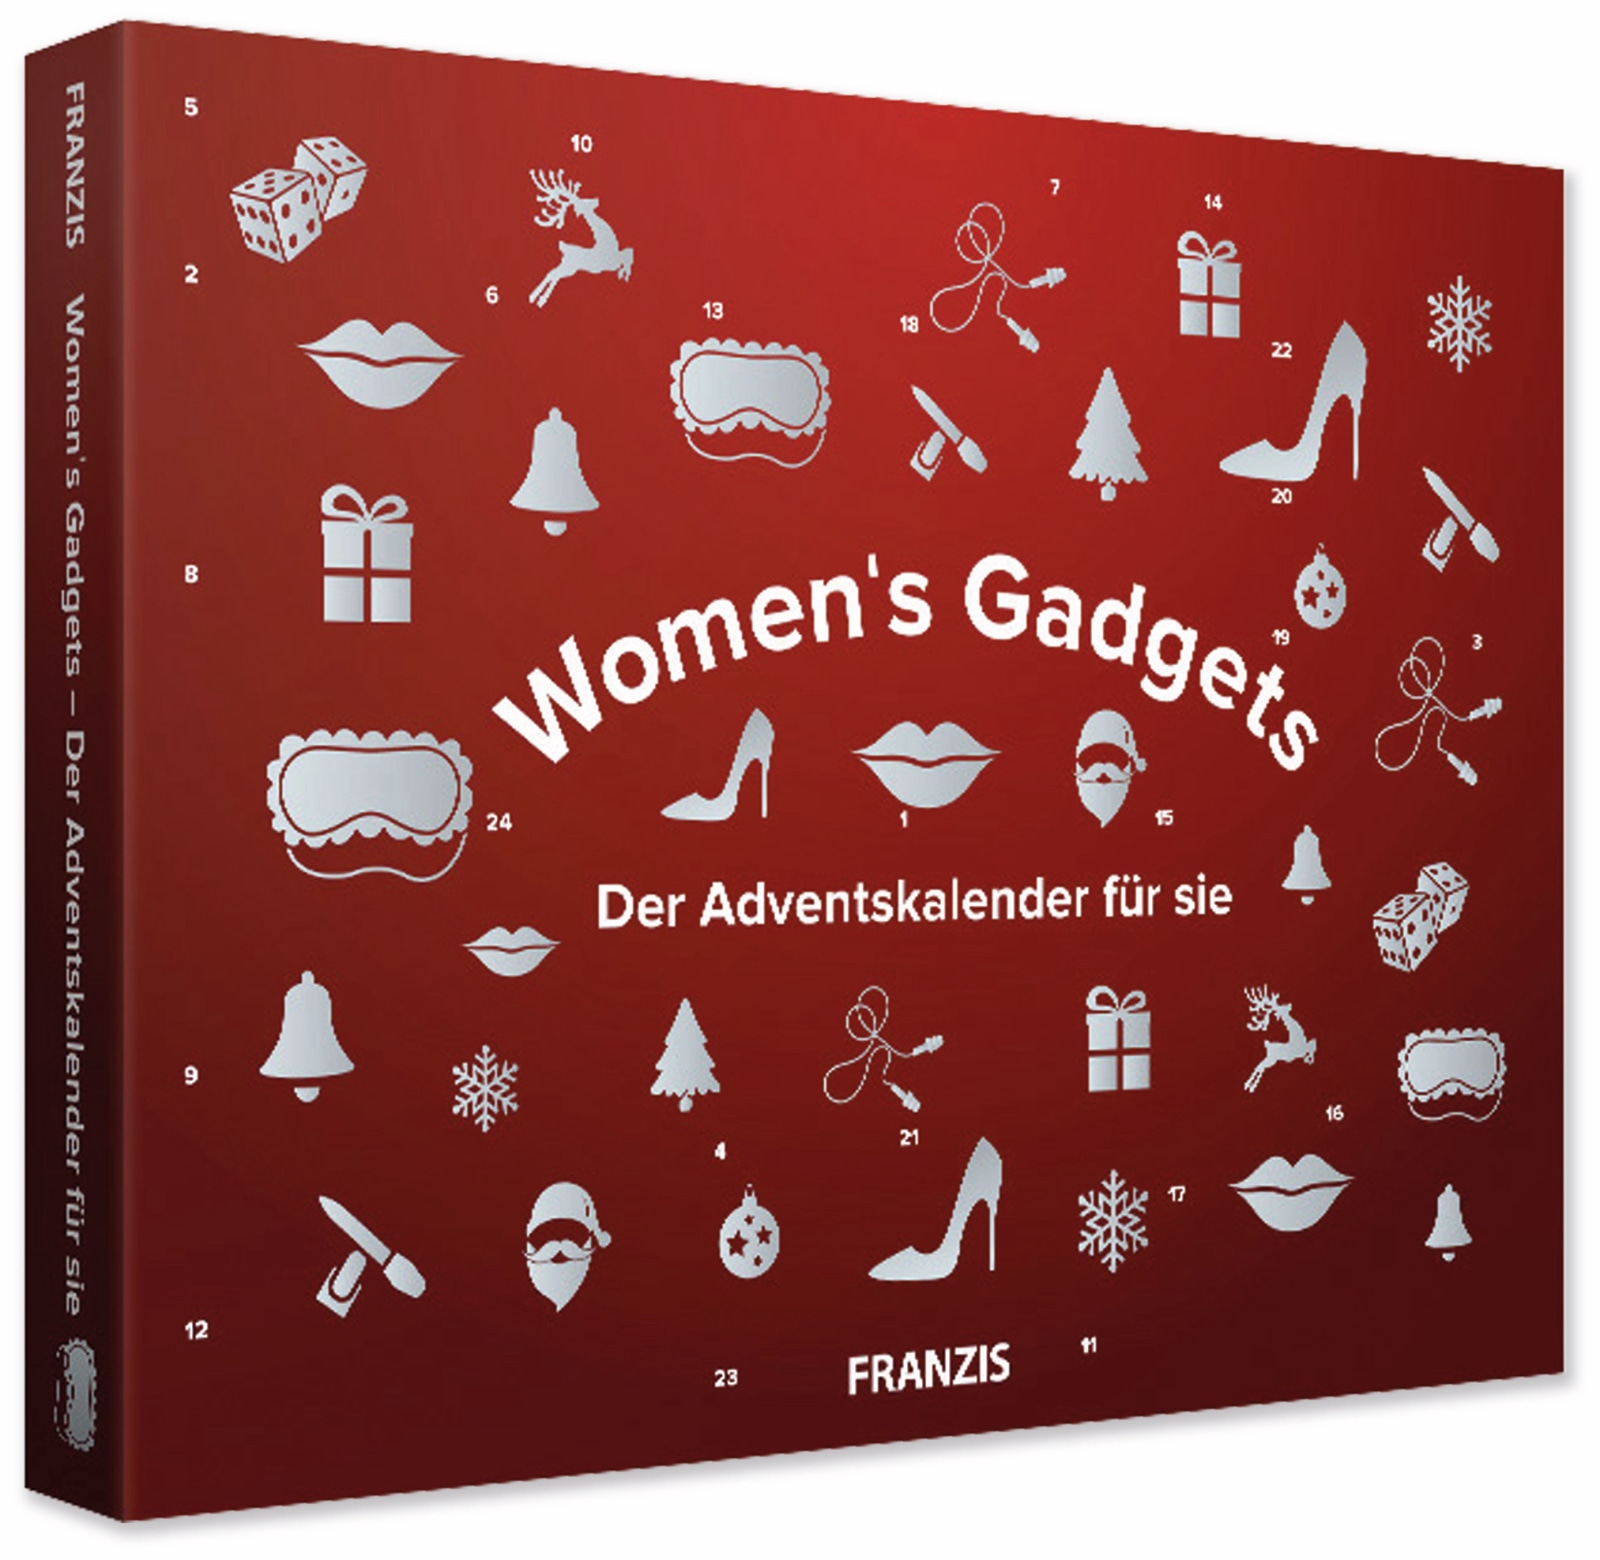 FRANZIS, Women's Gadgets - Der Adventskalender für sie